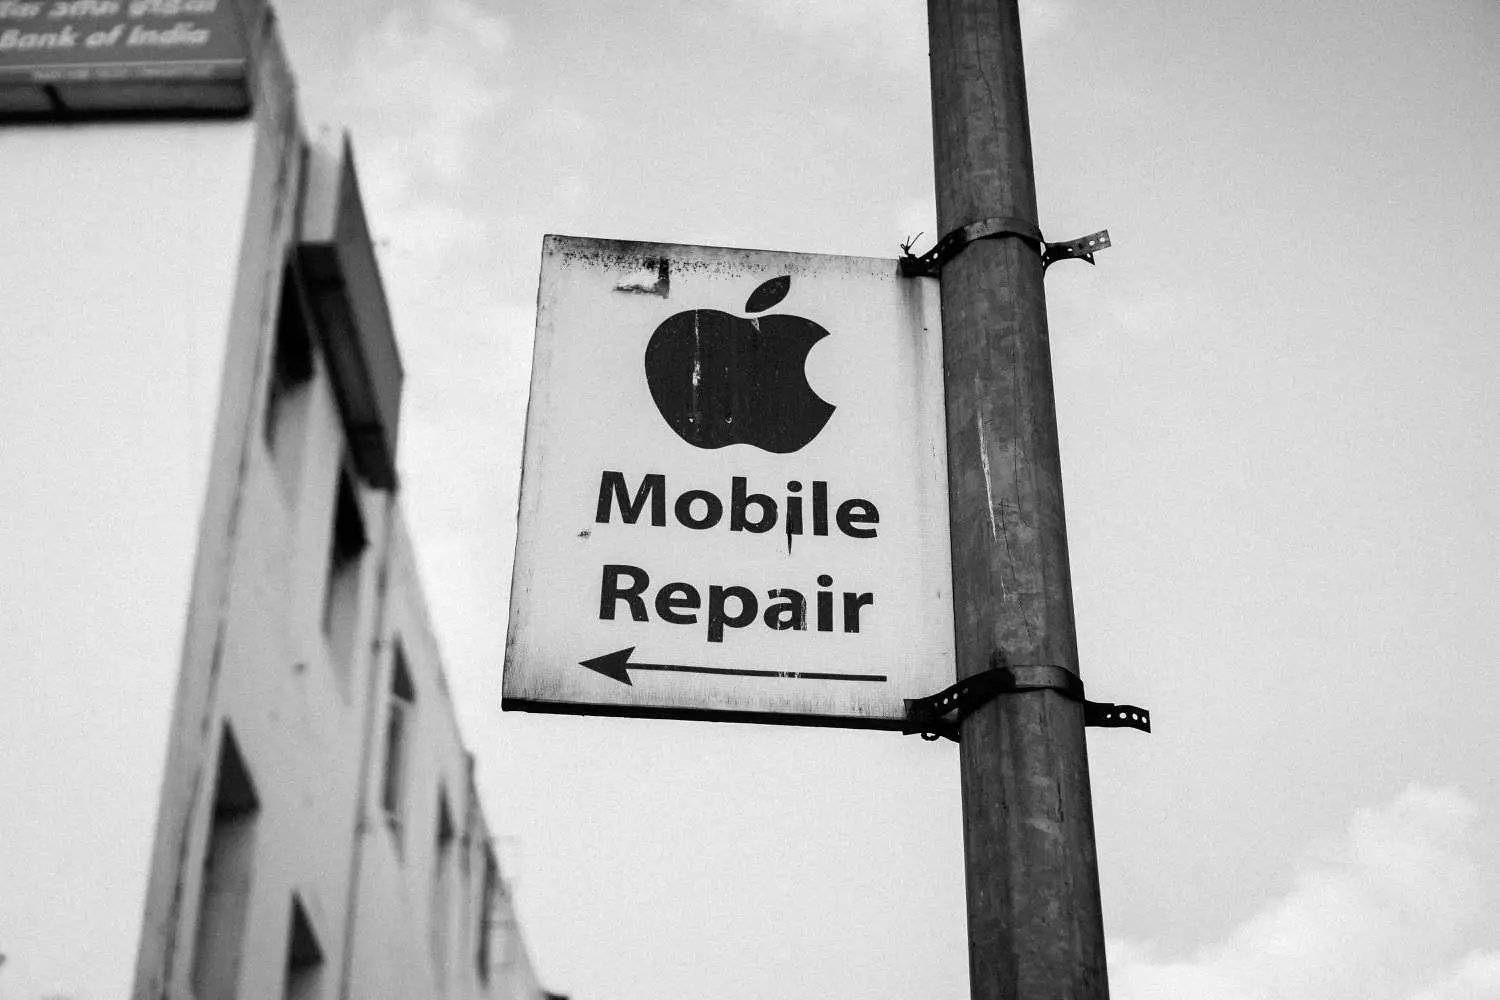 Placa de rua que diz "Mobile Conserto" sob o logotipo da Apple